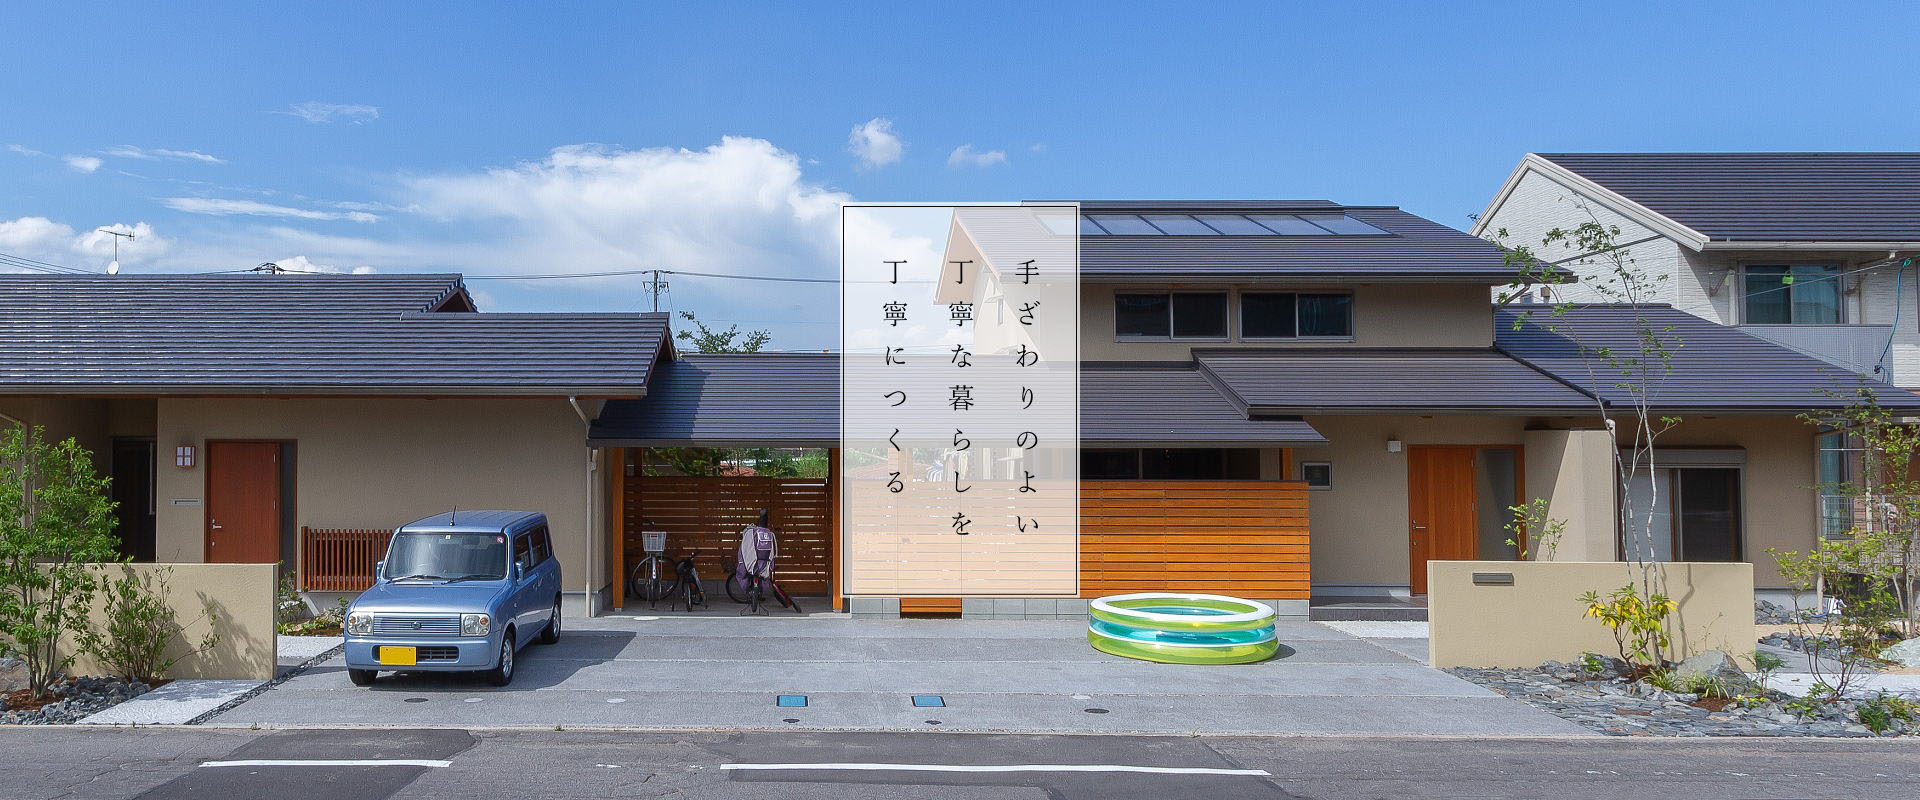 福山の工務店が提案するOMソーラーの二世帯住宅